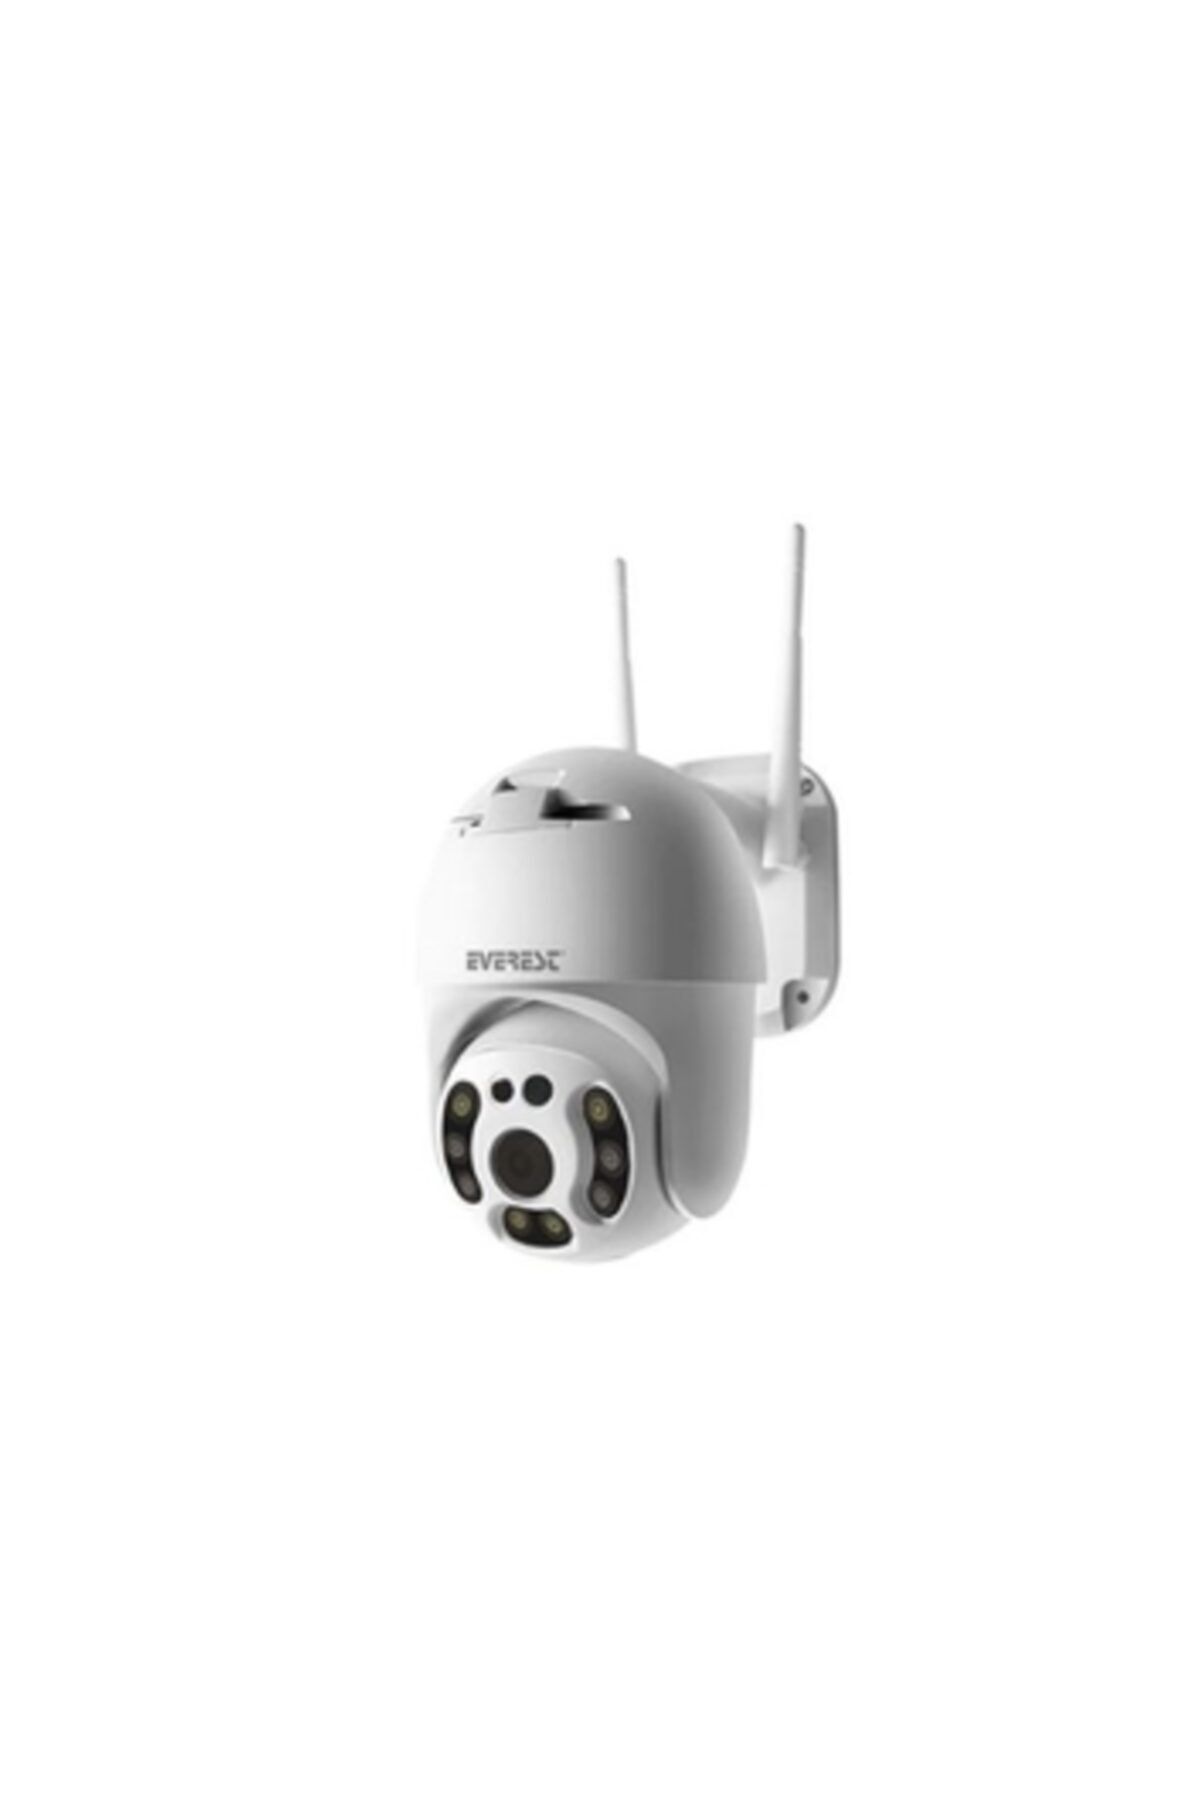 Everest Df-804w 2.0 Mp Hd Lens 3.6mm Ip Smart Wifi Network Tf Card Güvenlik Kamerası Yoosee